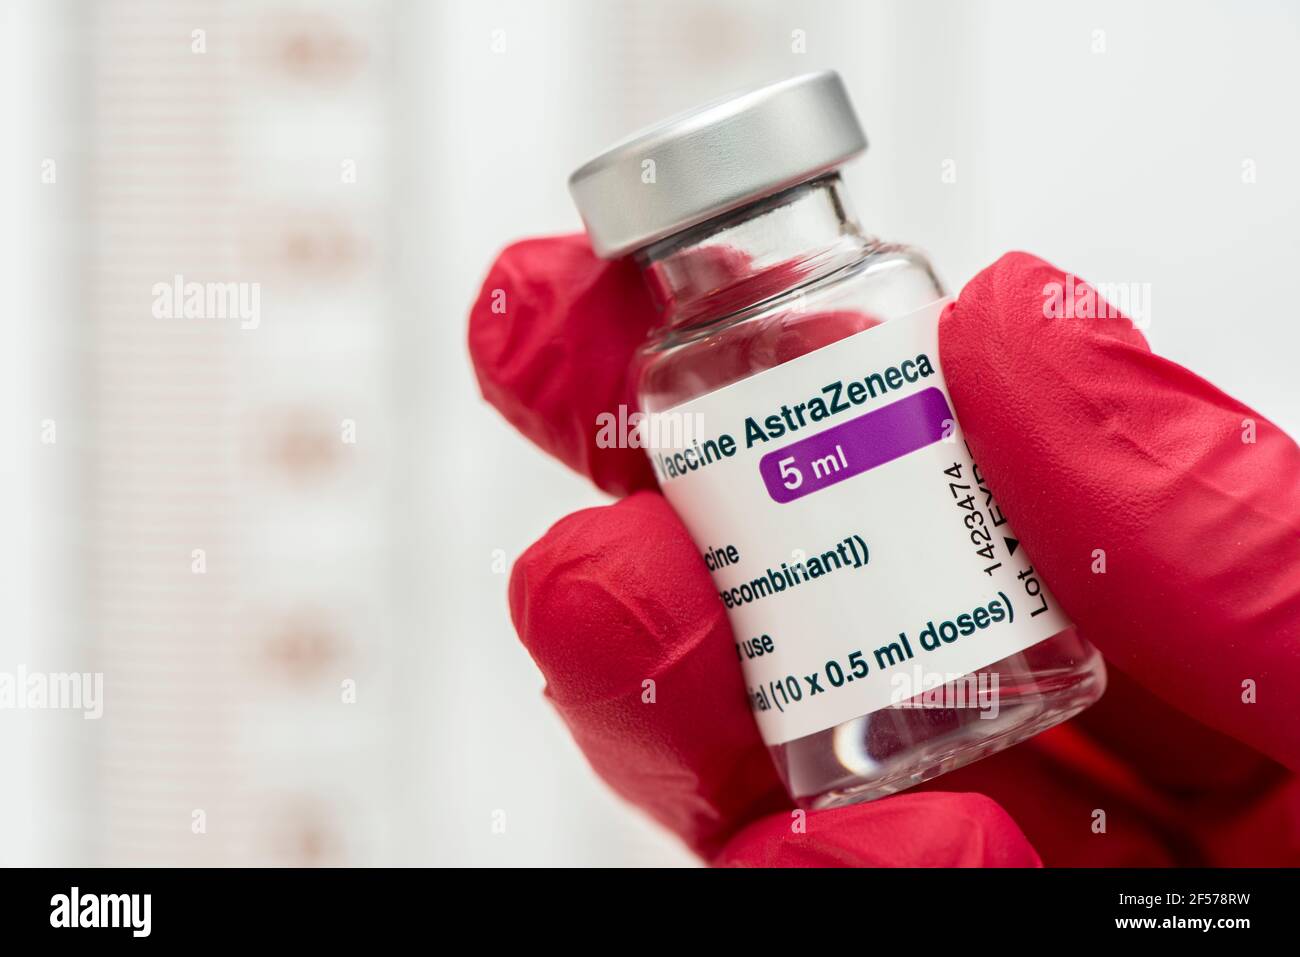 Original Impfampullen mit Impfstoff gegen Covid-19 Pandemie Stock Photo